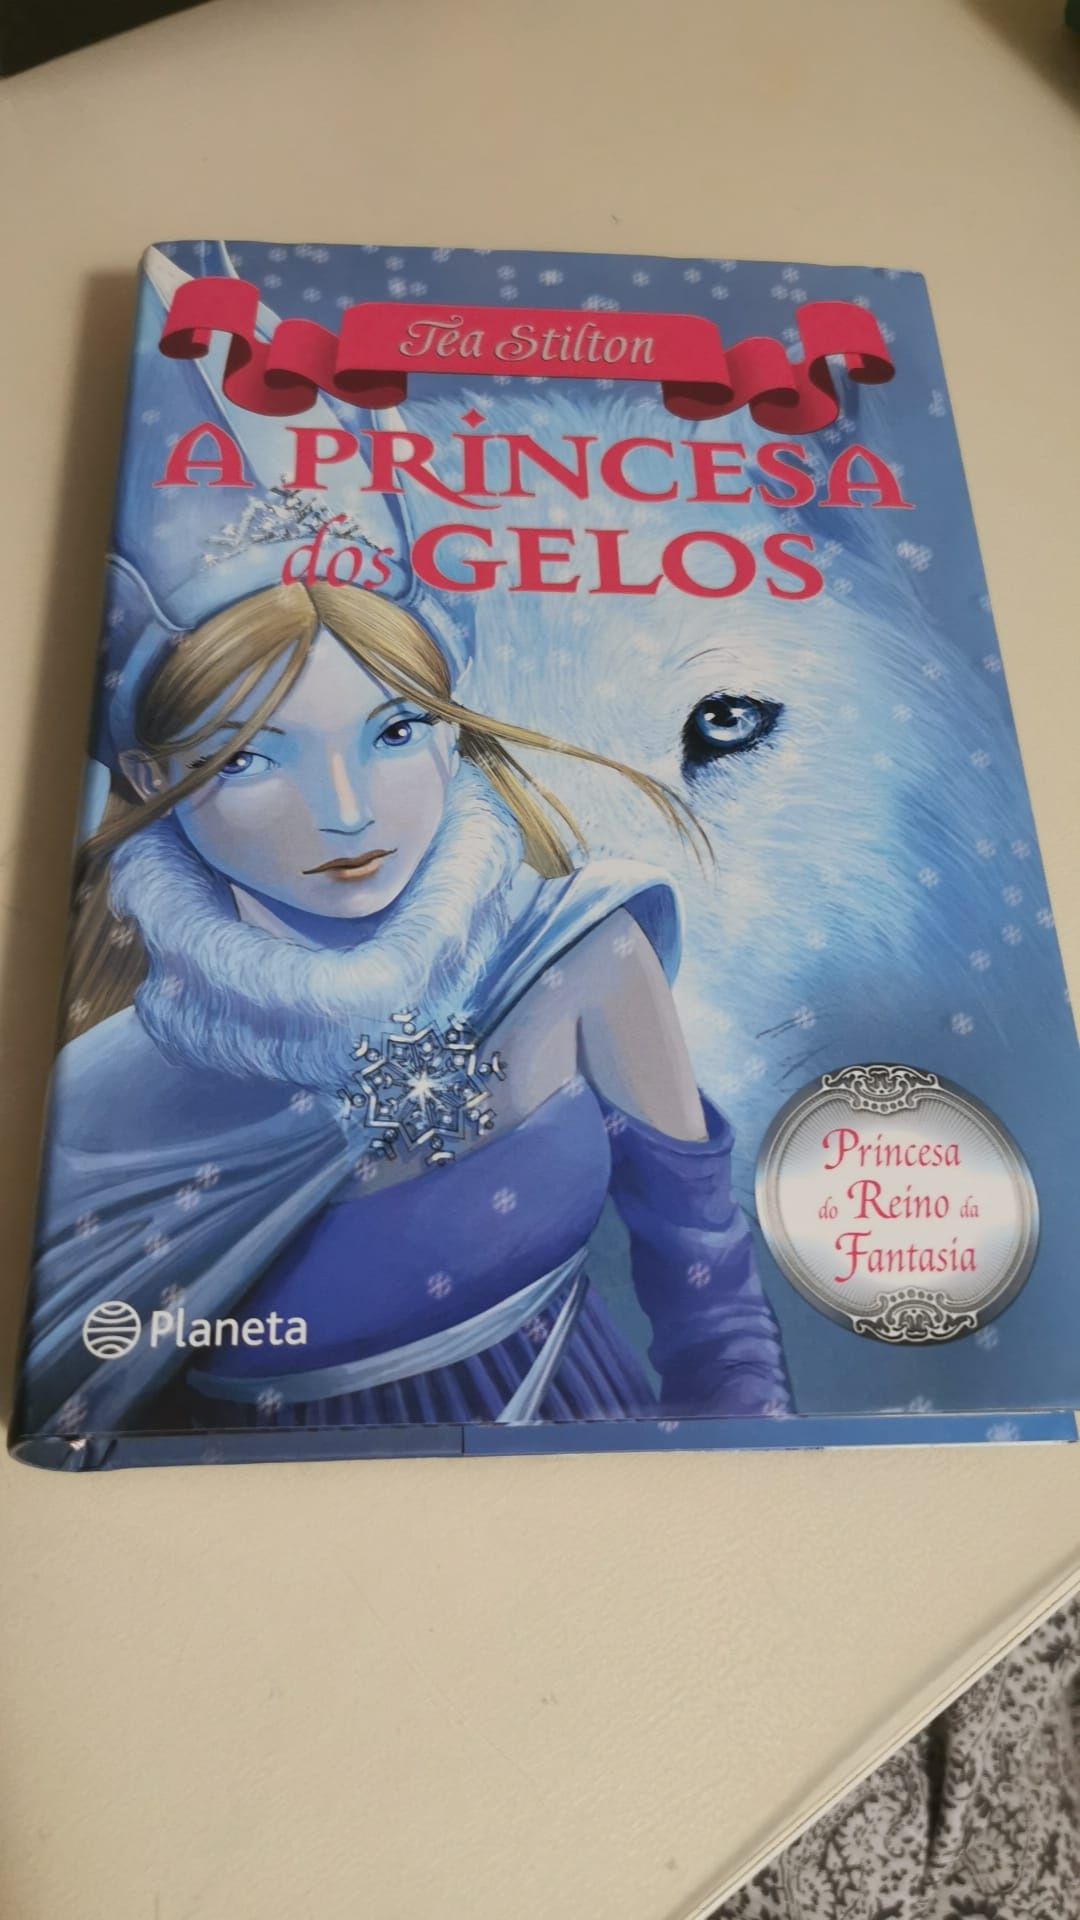 Livro "A princesa dos gelos"